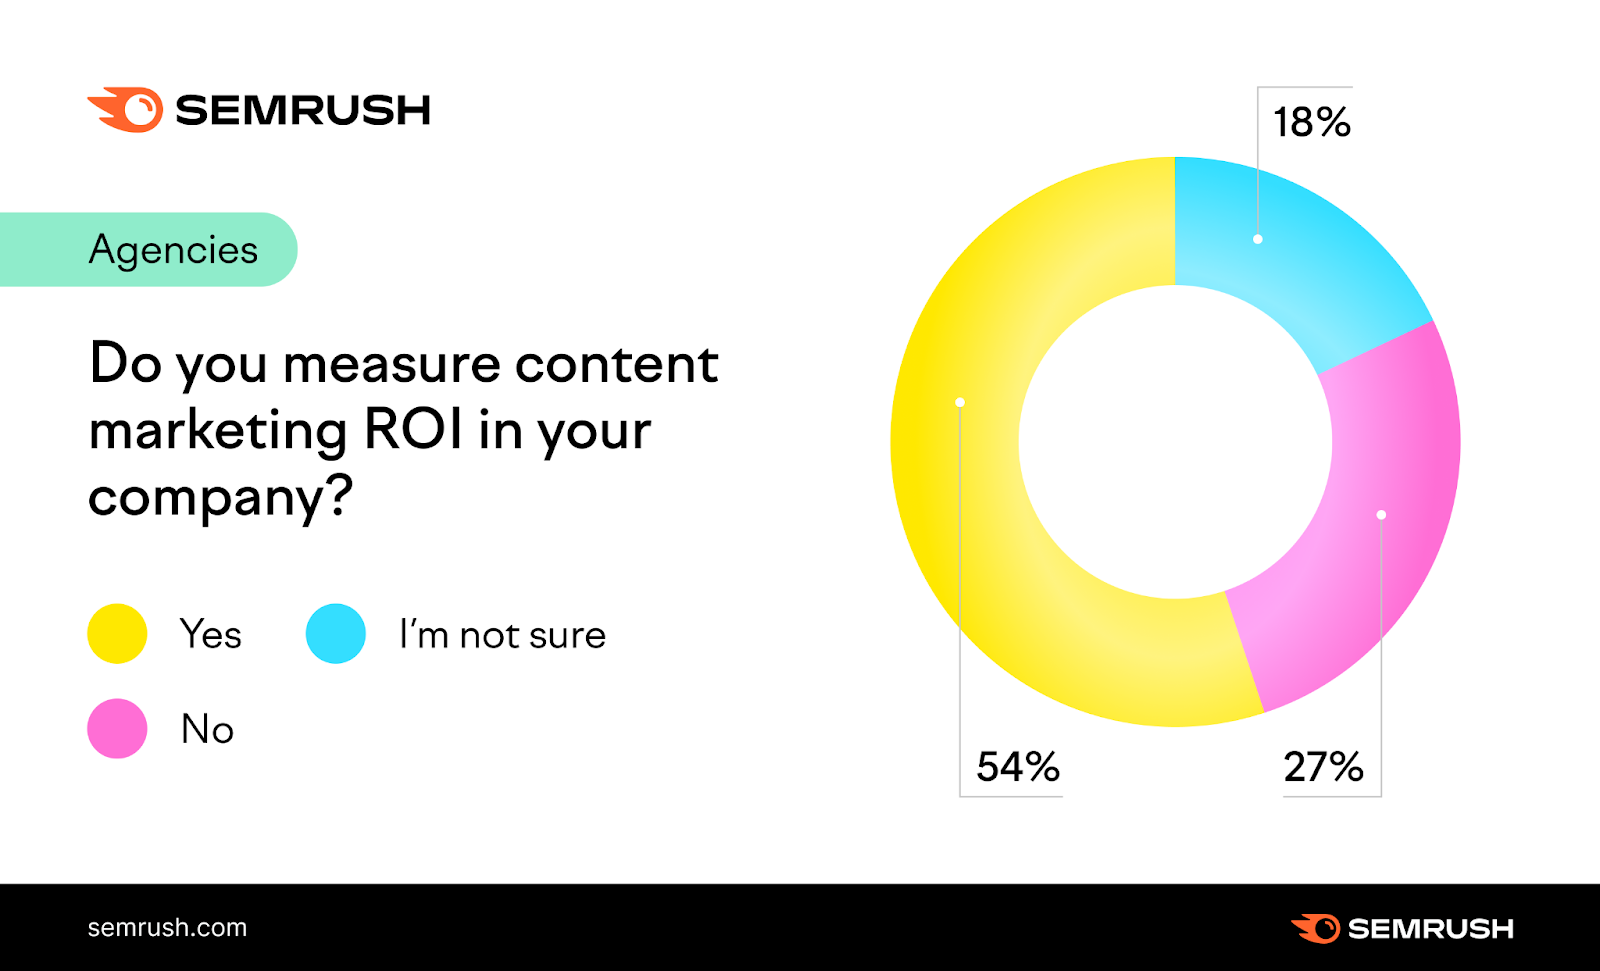 Measuring content ROI in Agencies